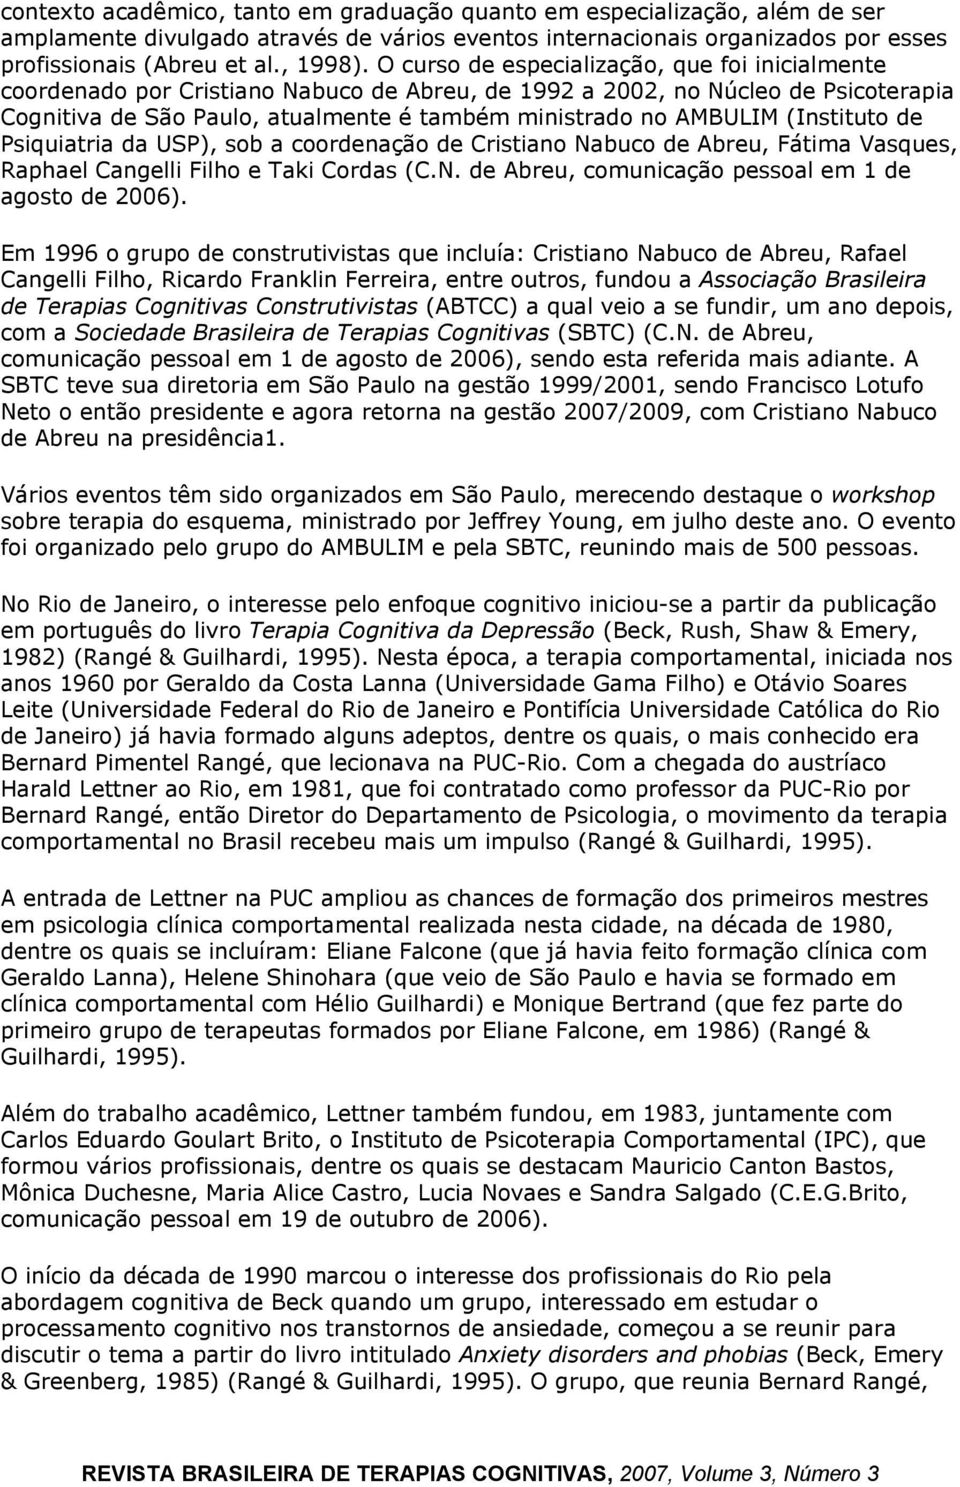 (Instituto de Psiquiatria da USP), sob a coordenação de Cristiano Nabuco de Abreu, Fátima Vasques, Raphael Cangelli Filho e Taki Cordas (C.N. de Abreu, comunicação pessoal em 1 de agosto de 2006).